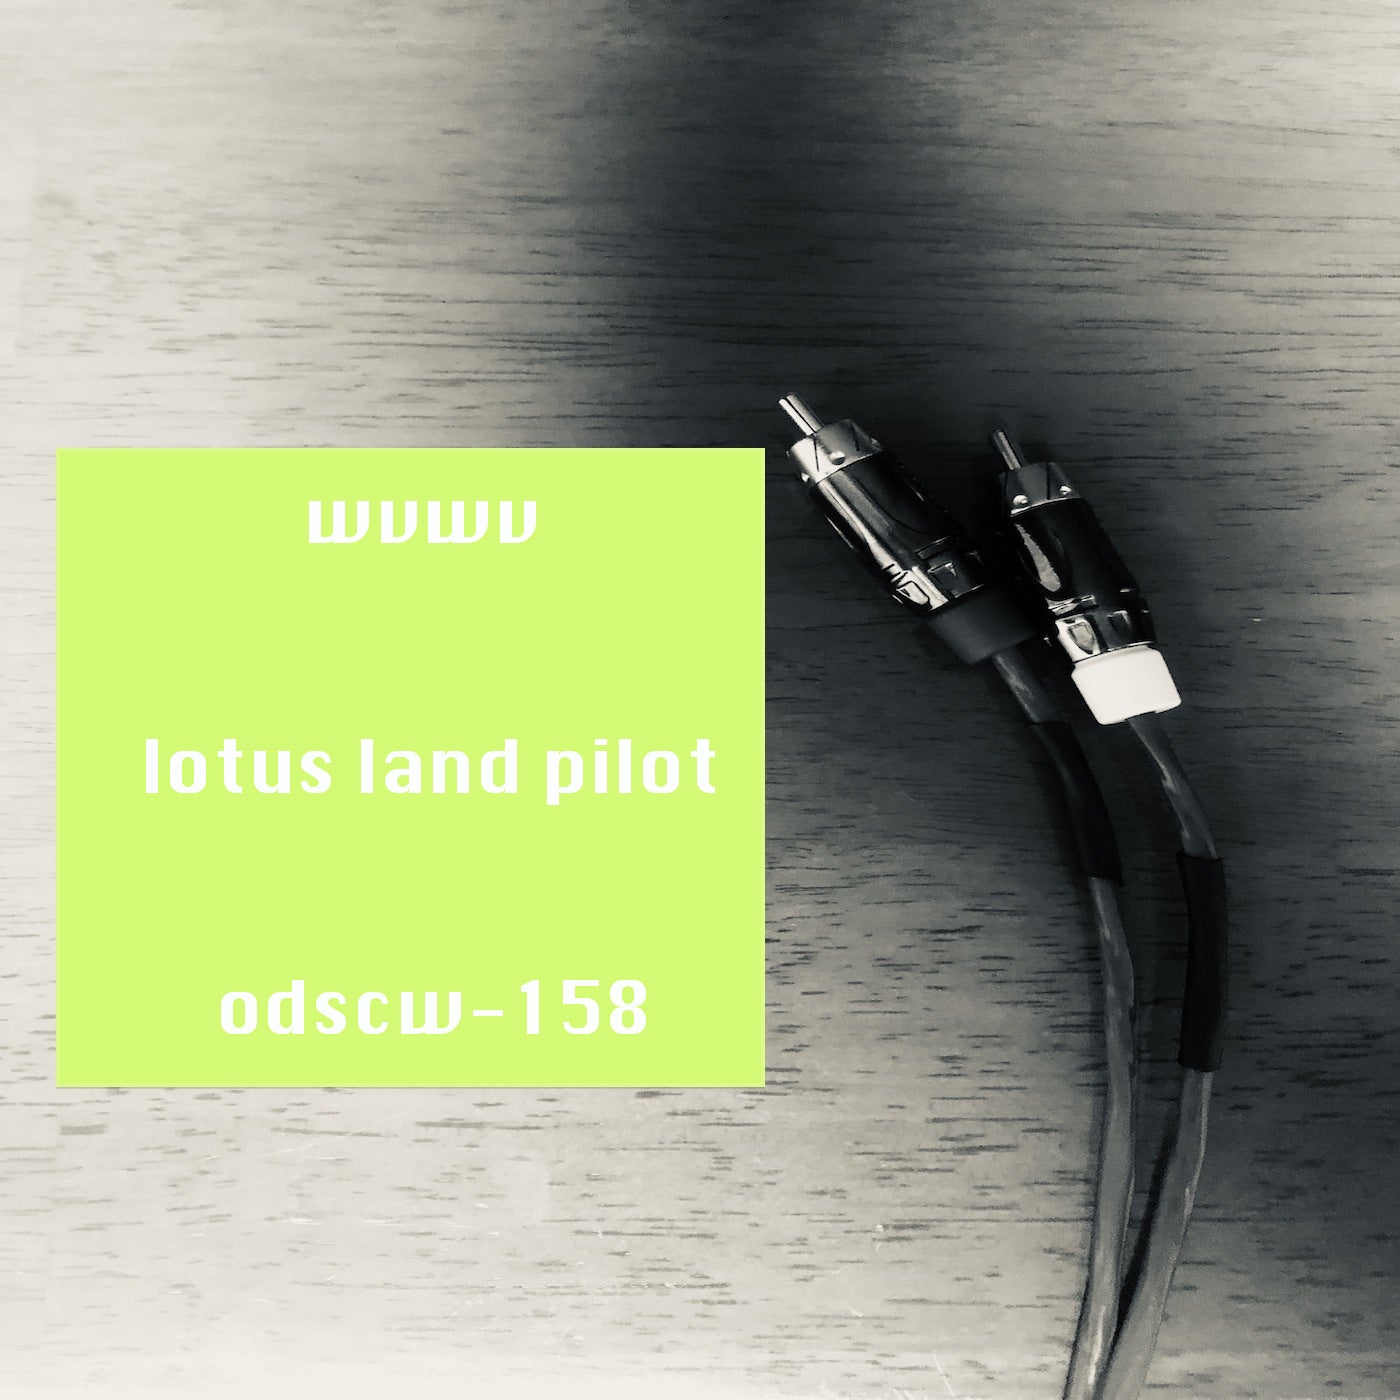 Lotus Land Pilot – Wvwv [ODSCW158]